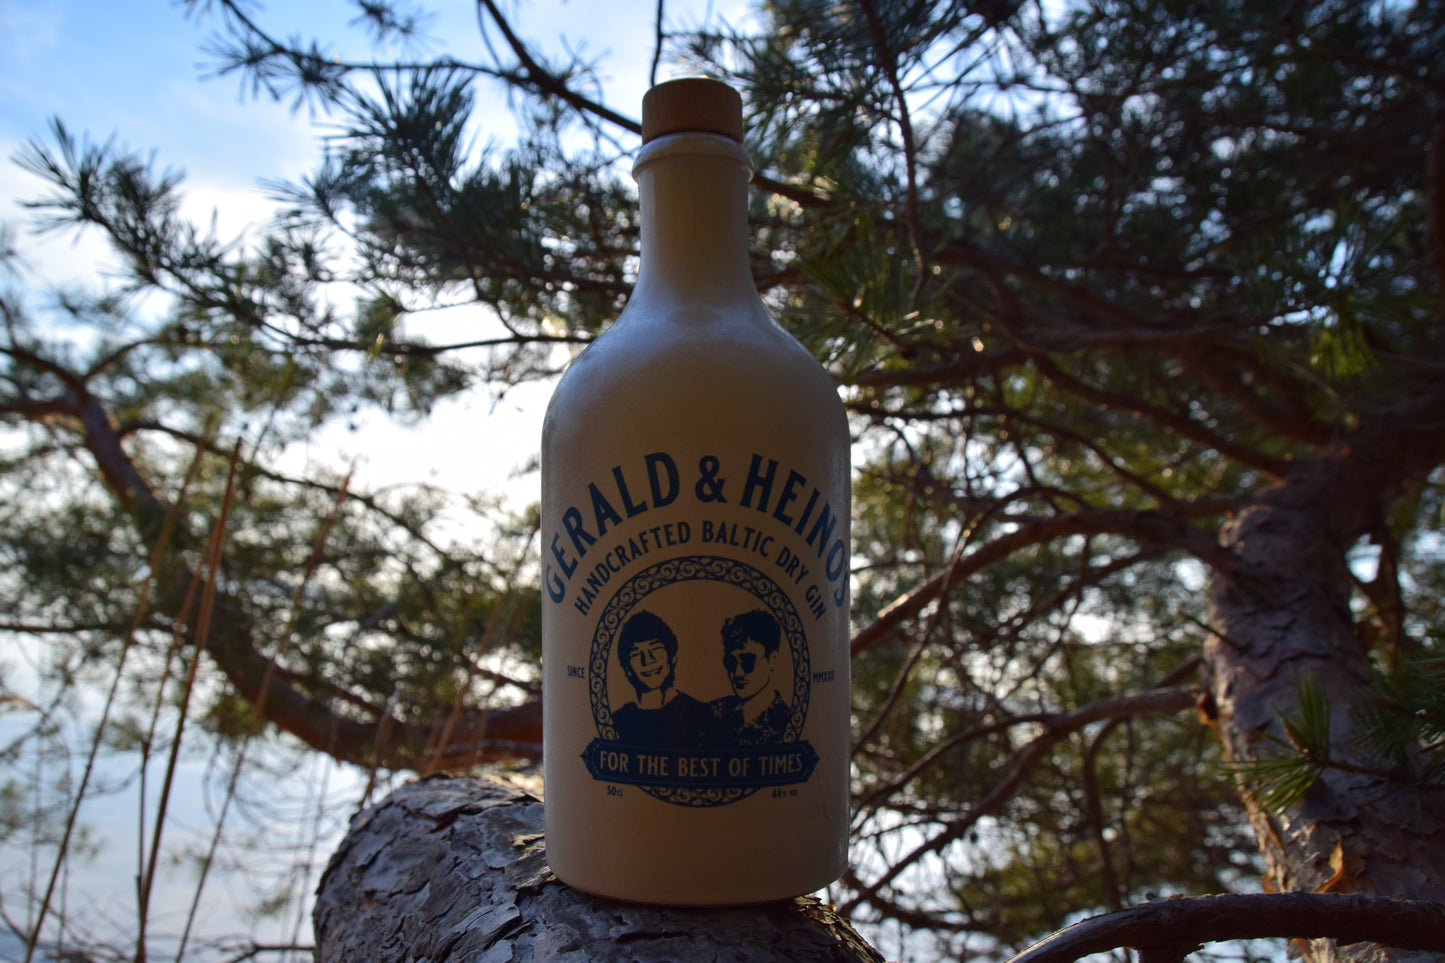 Gerald und Heino's Handcrafted Baltic Dry Gin